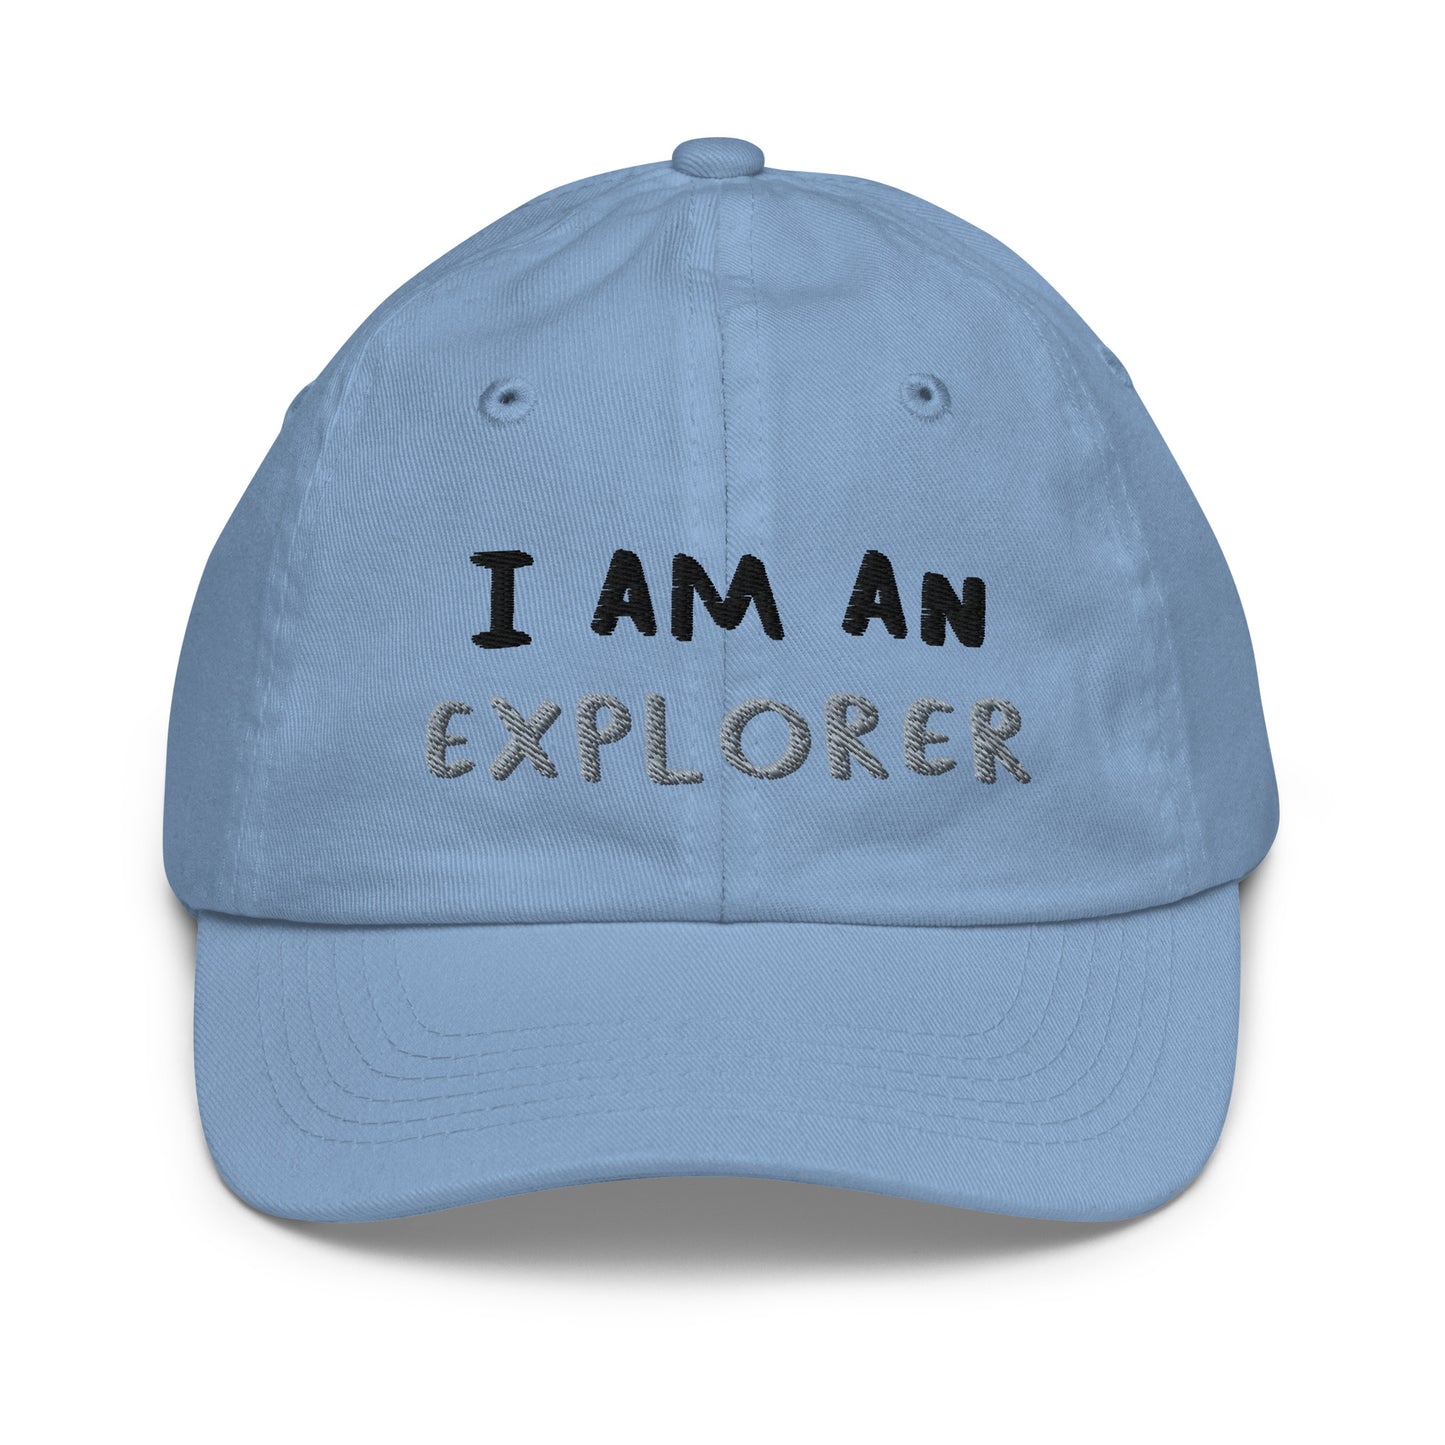 I AM AN EXPLORER - Youth baseball cap